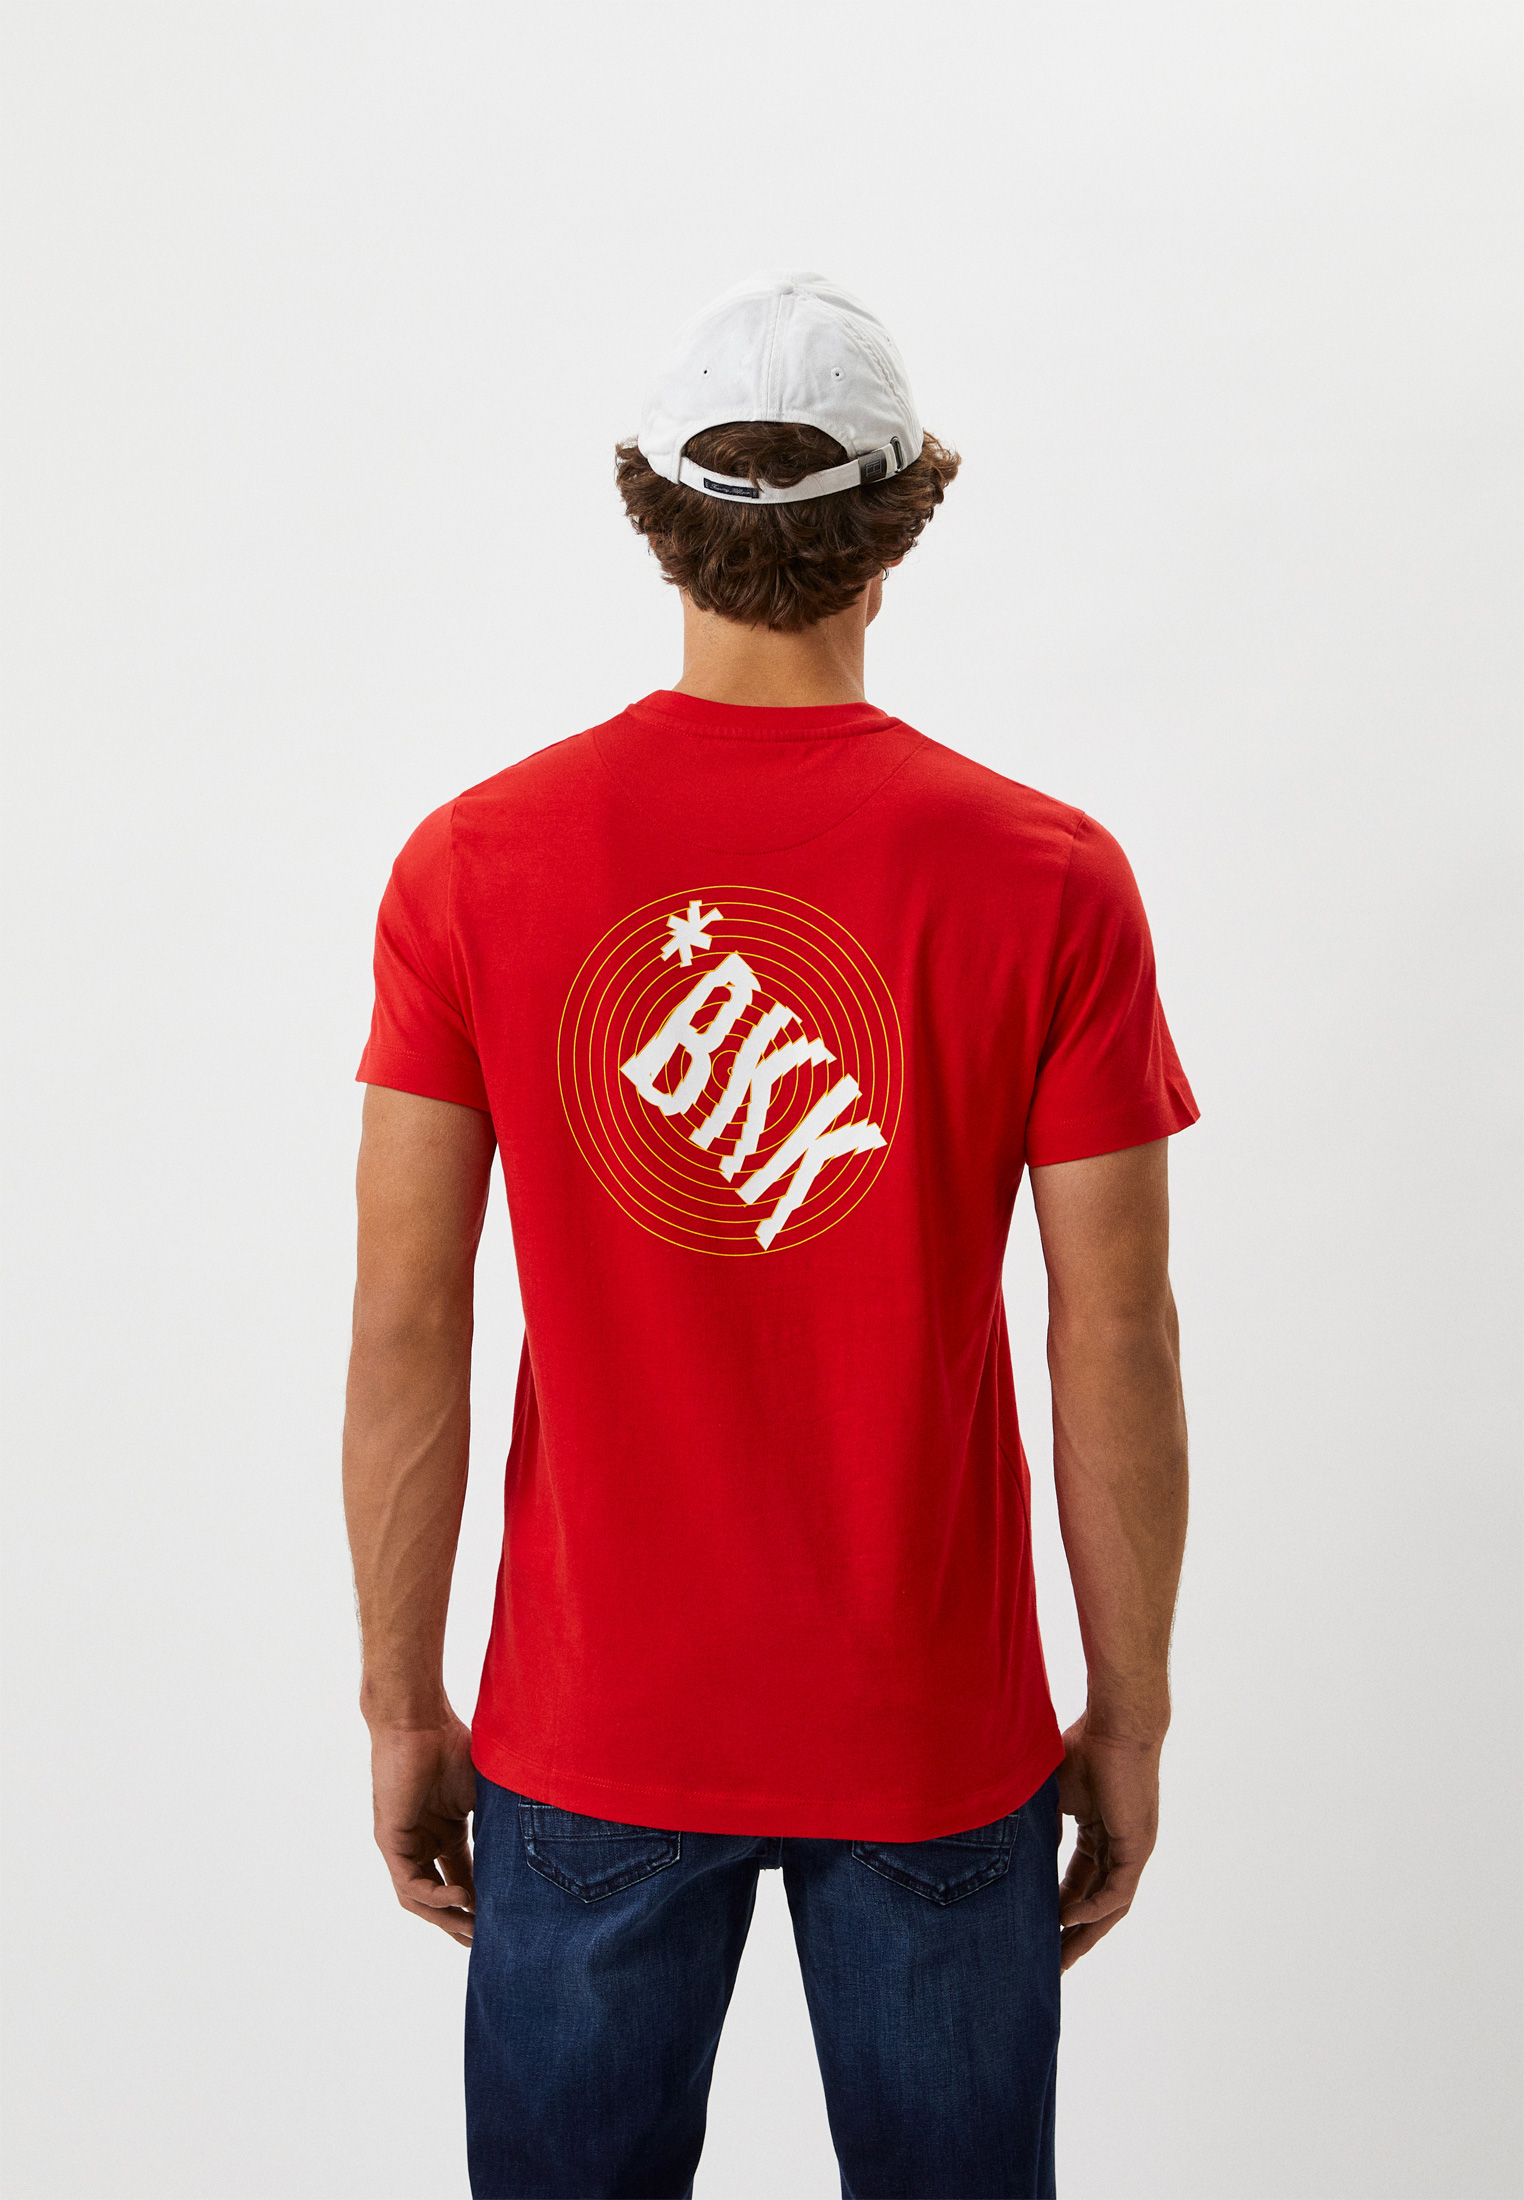 Мужская футболка Bikkembergs (Биккембергс) C 4 101 45 M 4298: изображение 3